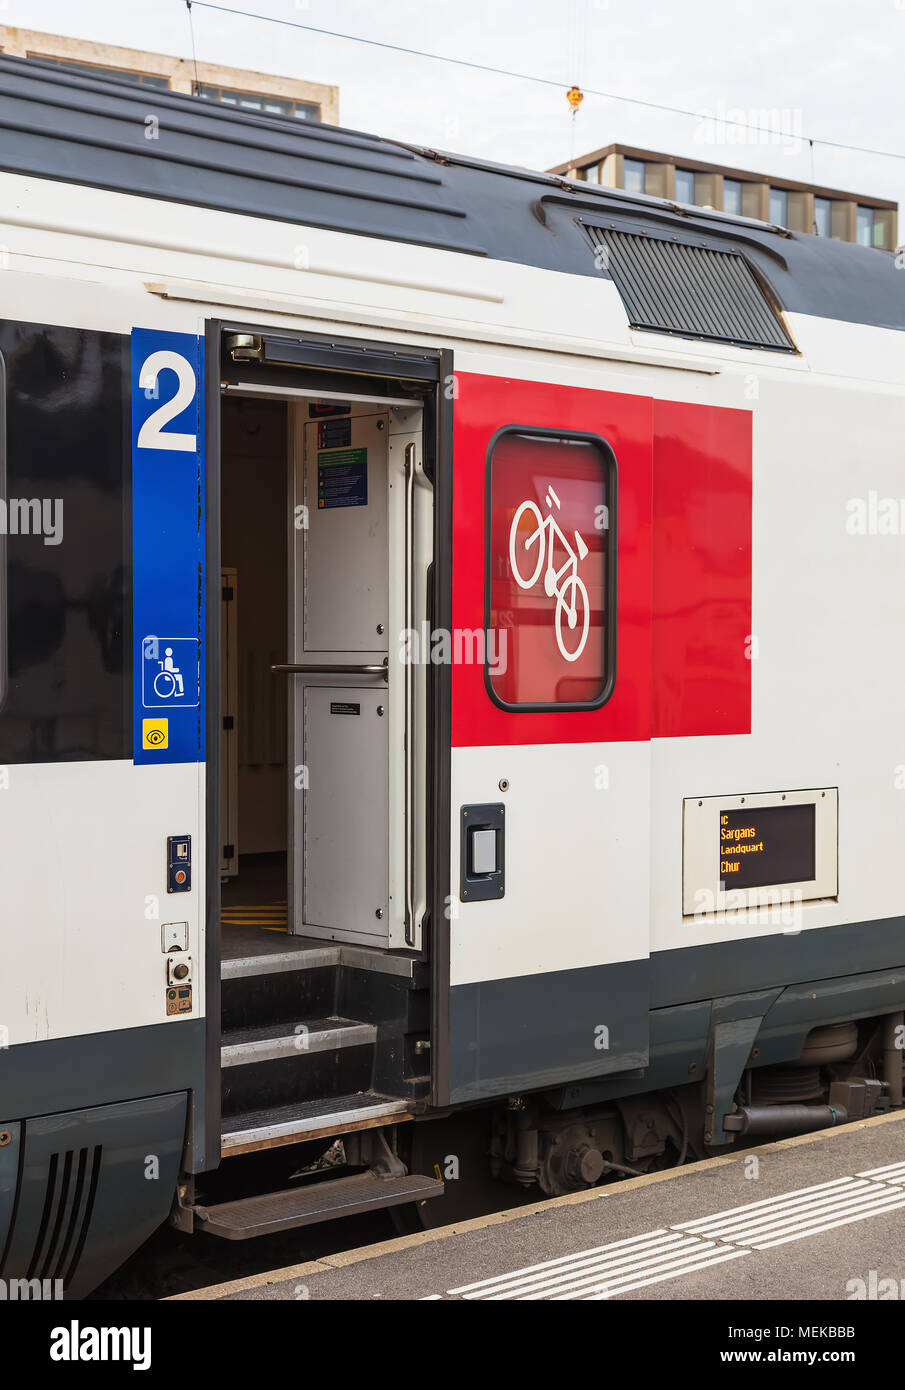 Zurigo, Svizzera - 3 Marzo, 2017: una porta di un vagone di un treno passeggeri delle Ferrovie Federali Svizzere in piedi in una piattaforma di Zurigo Foto Stock